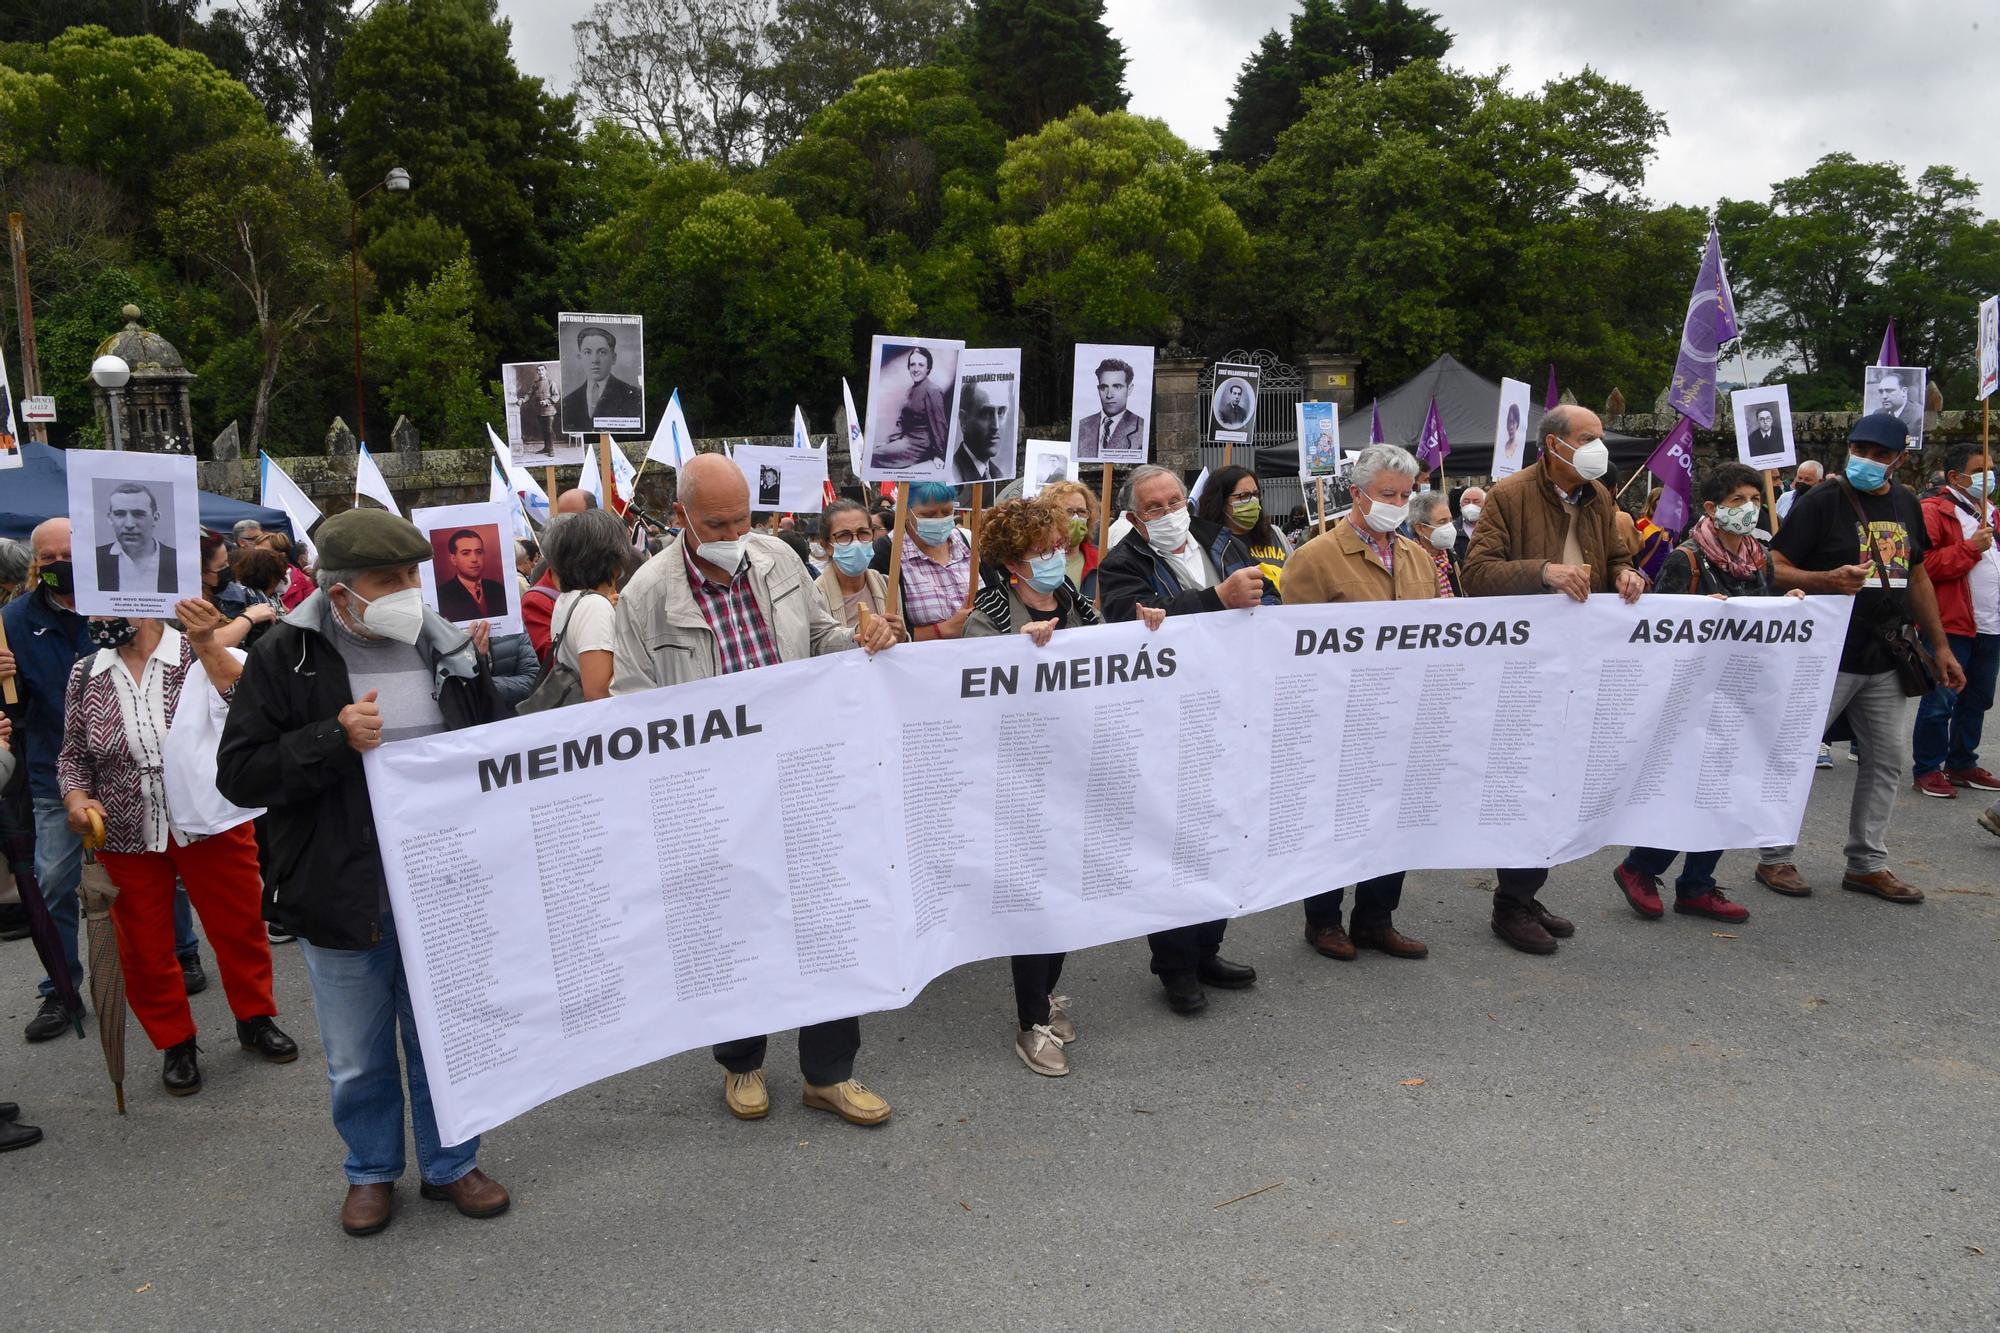 Más de 300 personas se manifiestan contra "nuevo expolio" en Pazo de Meirás